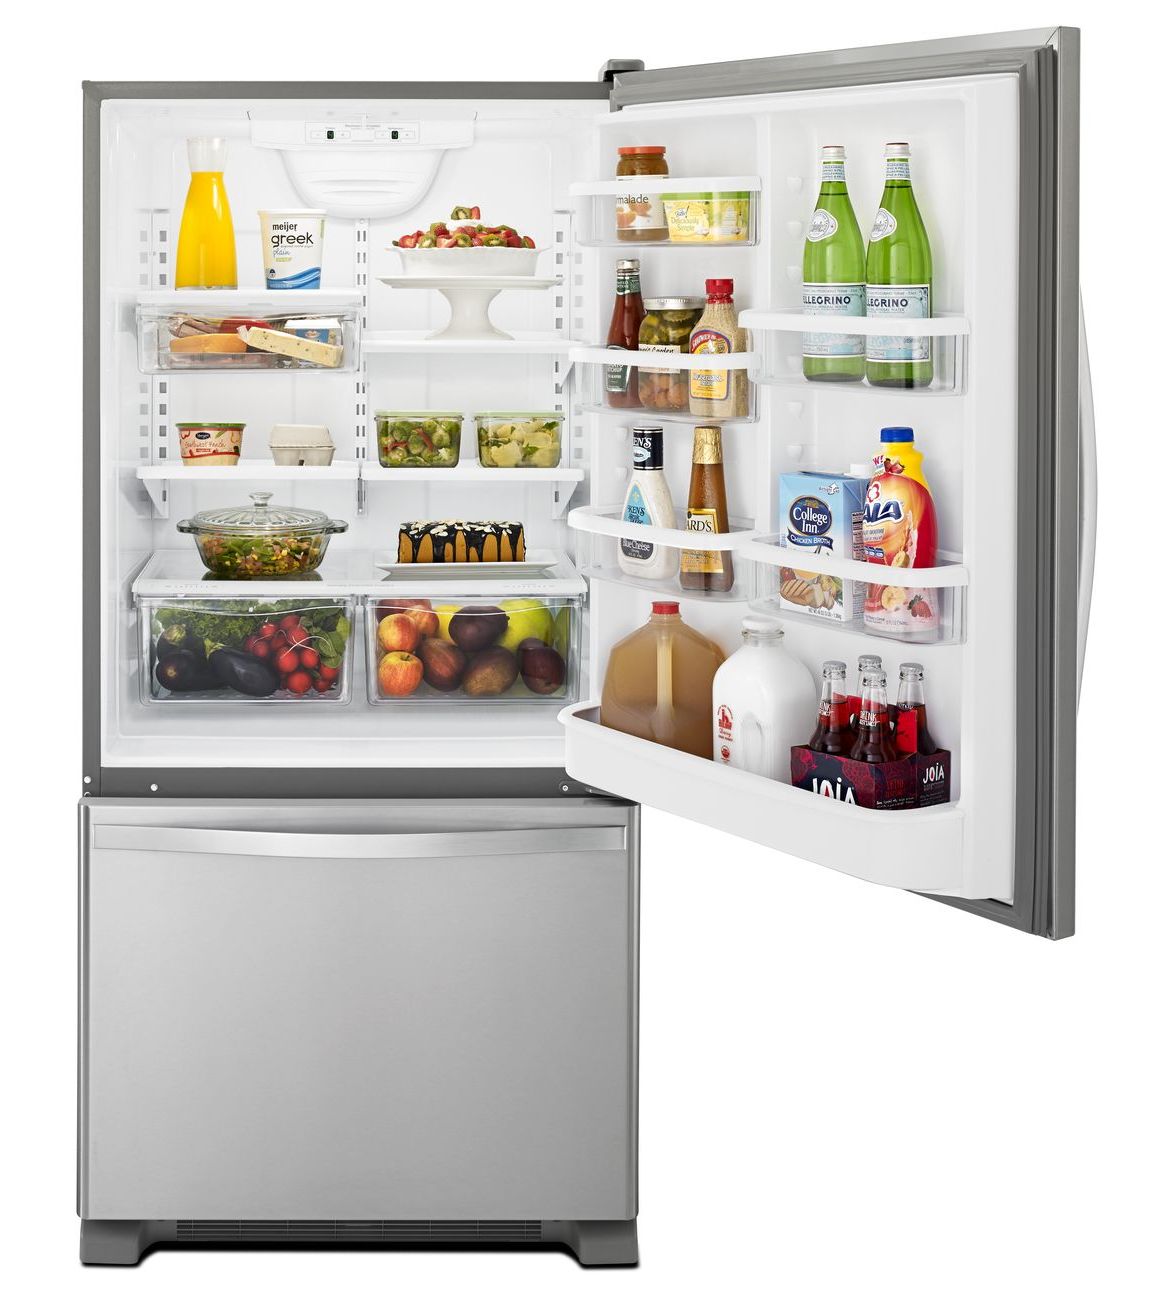 30" Whirlpool 19 Cu. Ft. Bottom-Freezer Refrigerator with Freezer Drawer - WRB329RFBM